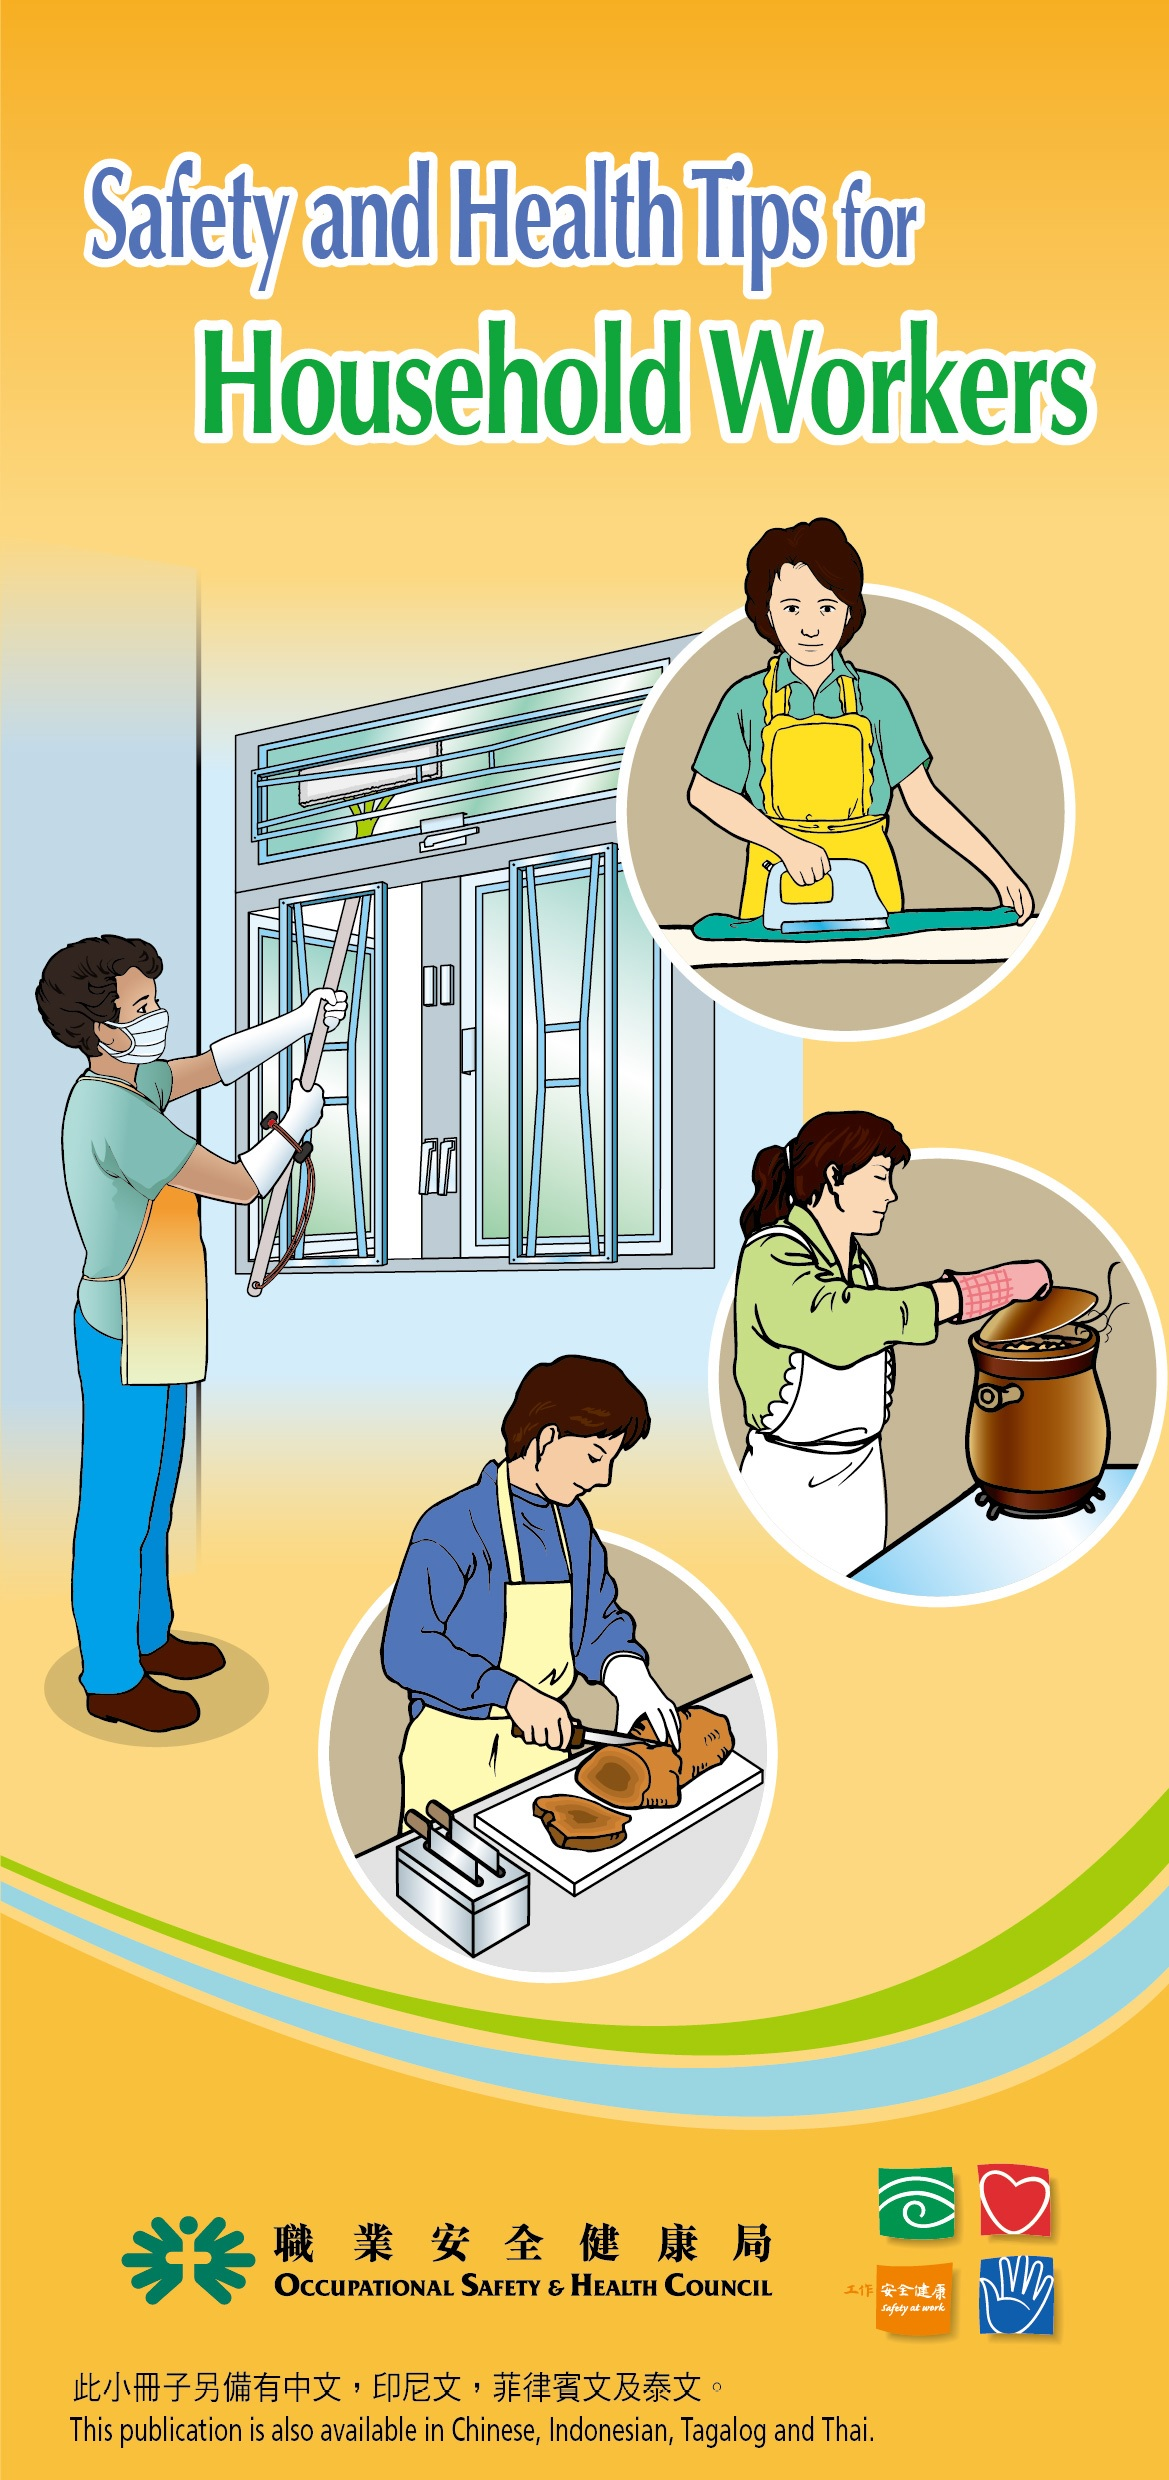 گھریلو ملازمین کے لیے حفاظت اور صحت کے حوالے سے مشورے